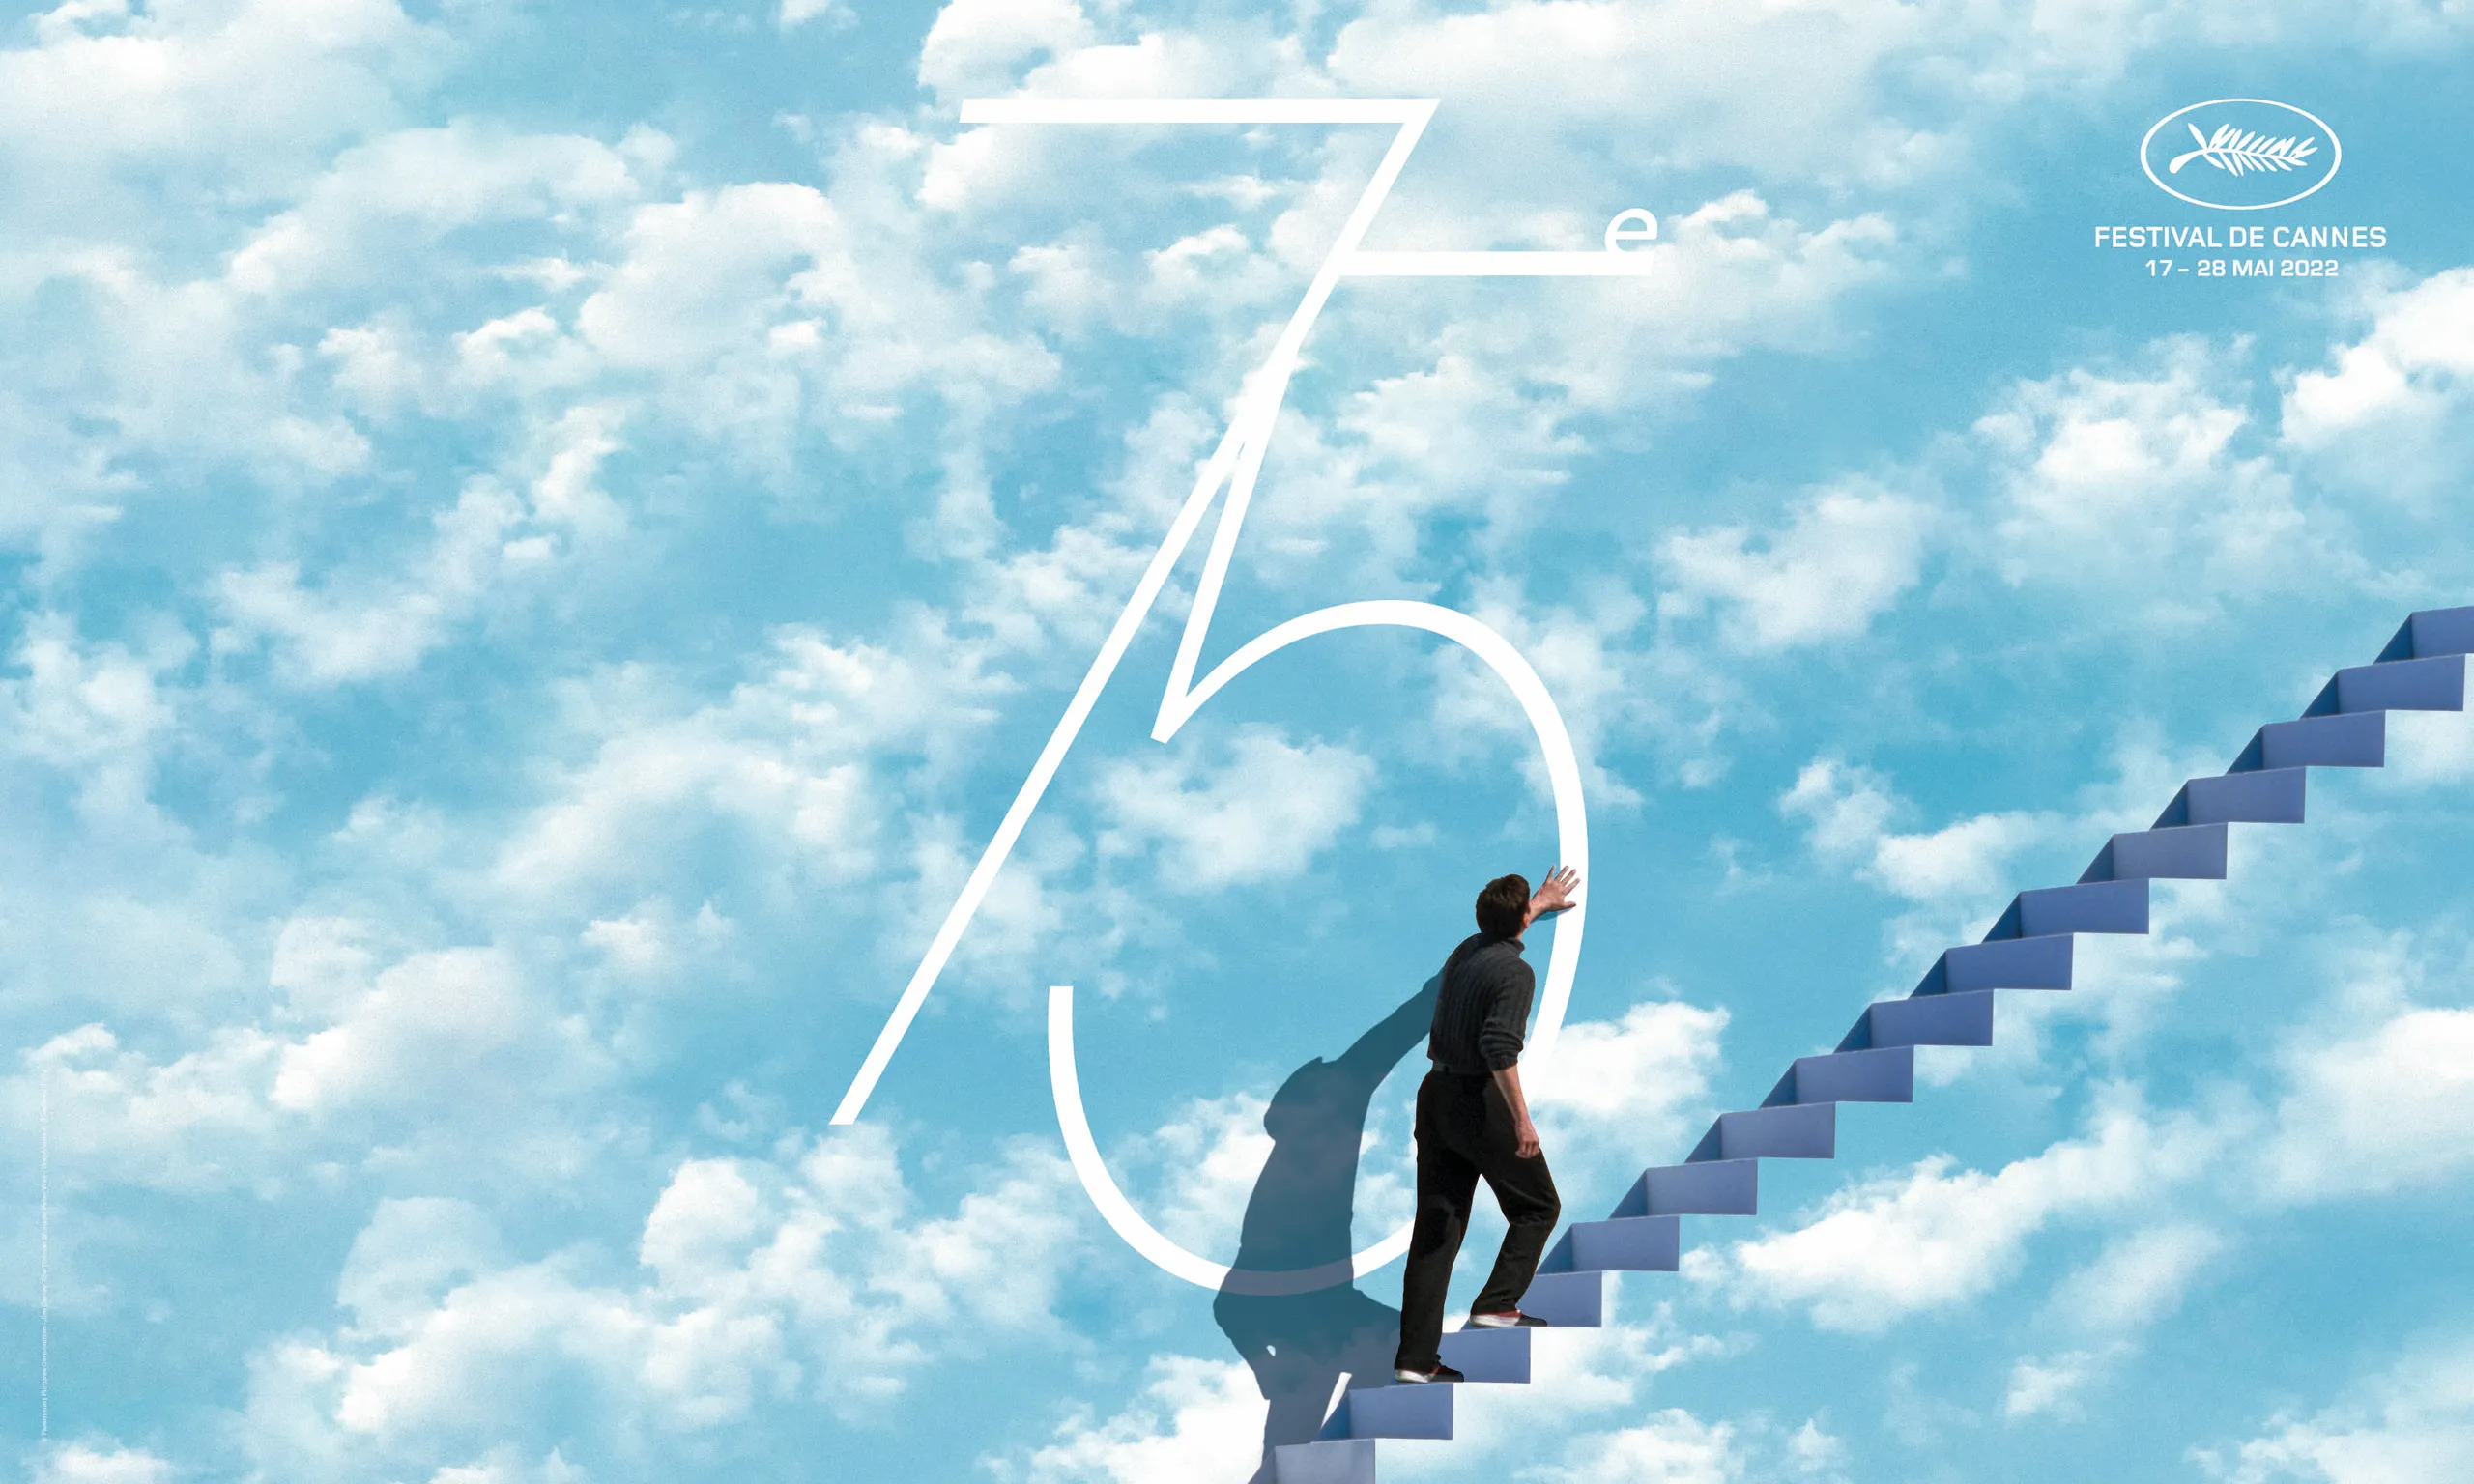 Banner do 75º Festival de Cannes. O pôster mostra uma cena do filme O Show de Truman, com um homem subindo escadas e tocando na parede, que tem o desenho de um céu azul com nuvens brancas. Nele, está o número 75 e o logo do Festival de Cannes.